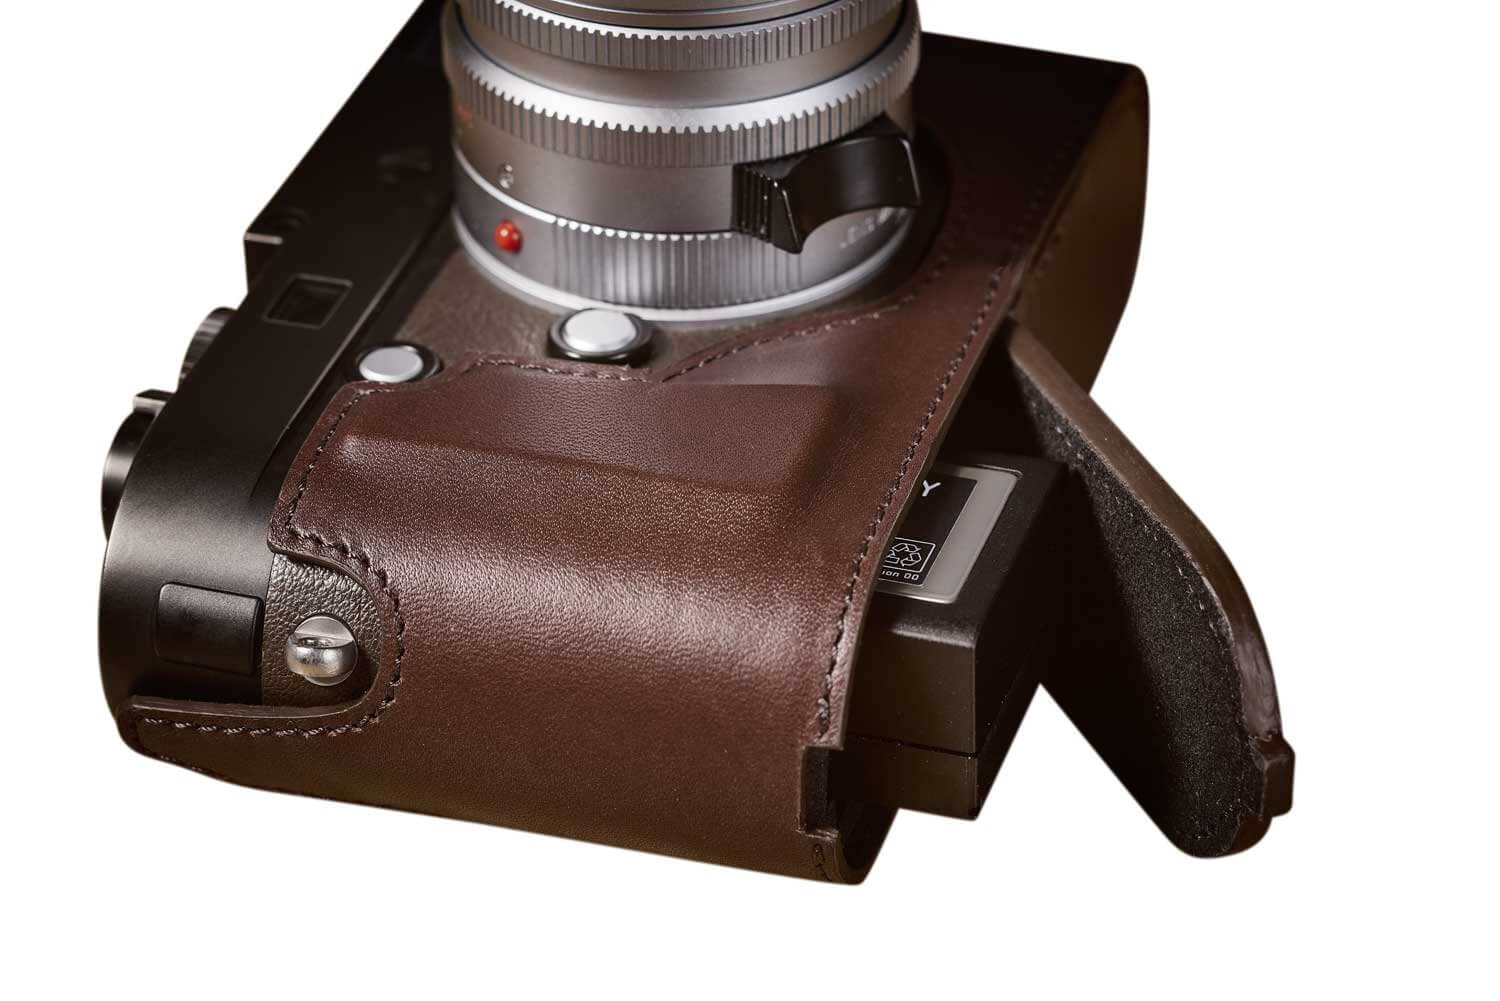 Leica Typ 240/262 Half Case (offene Version)